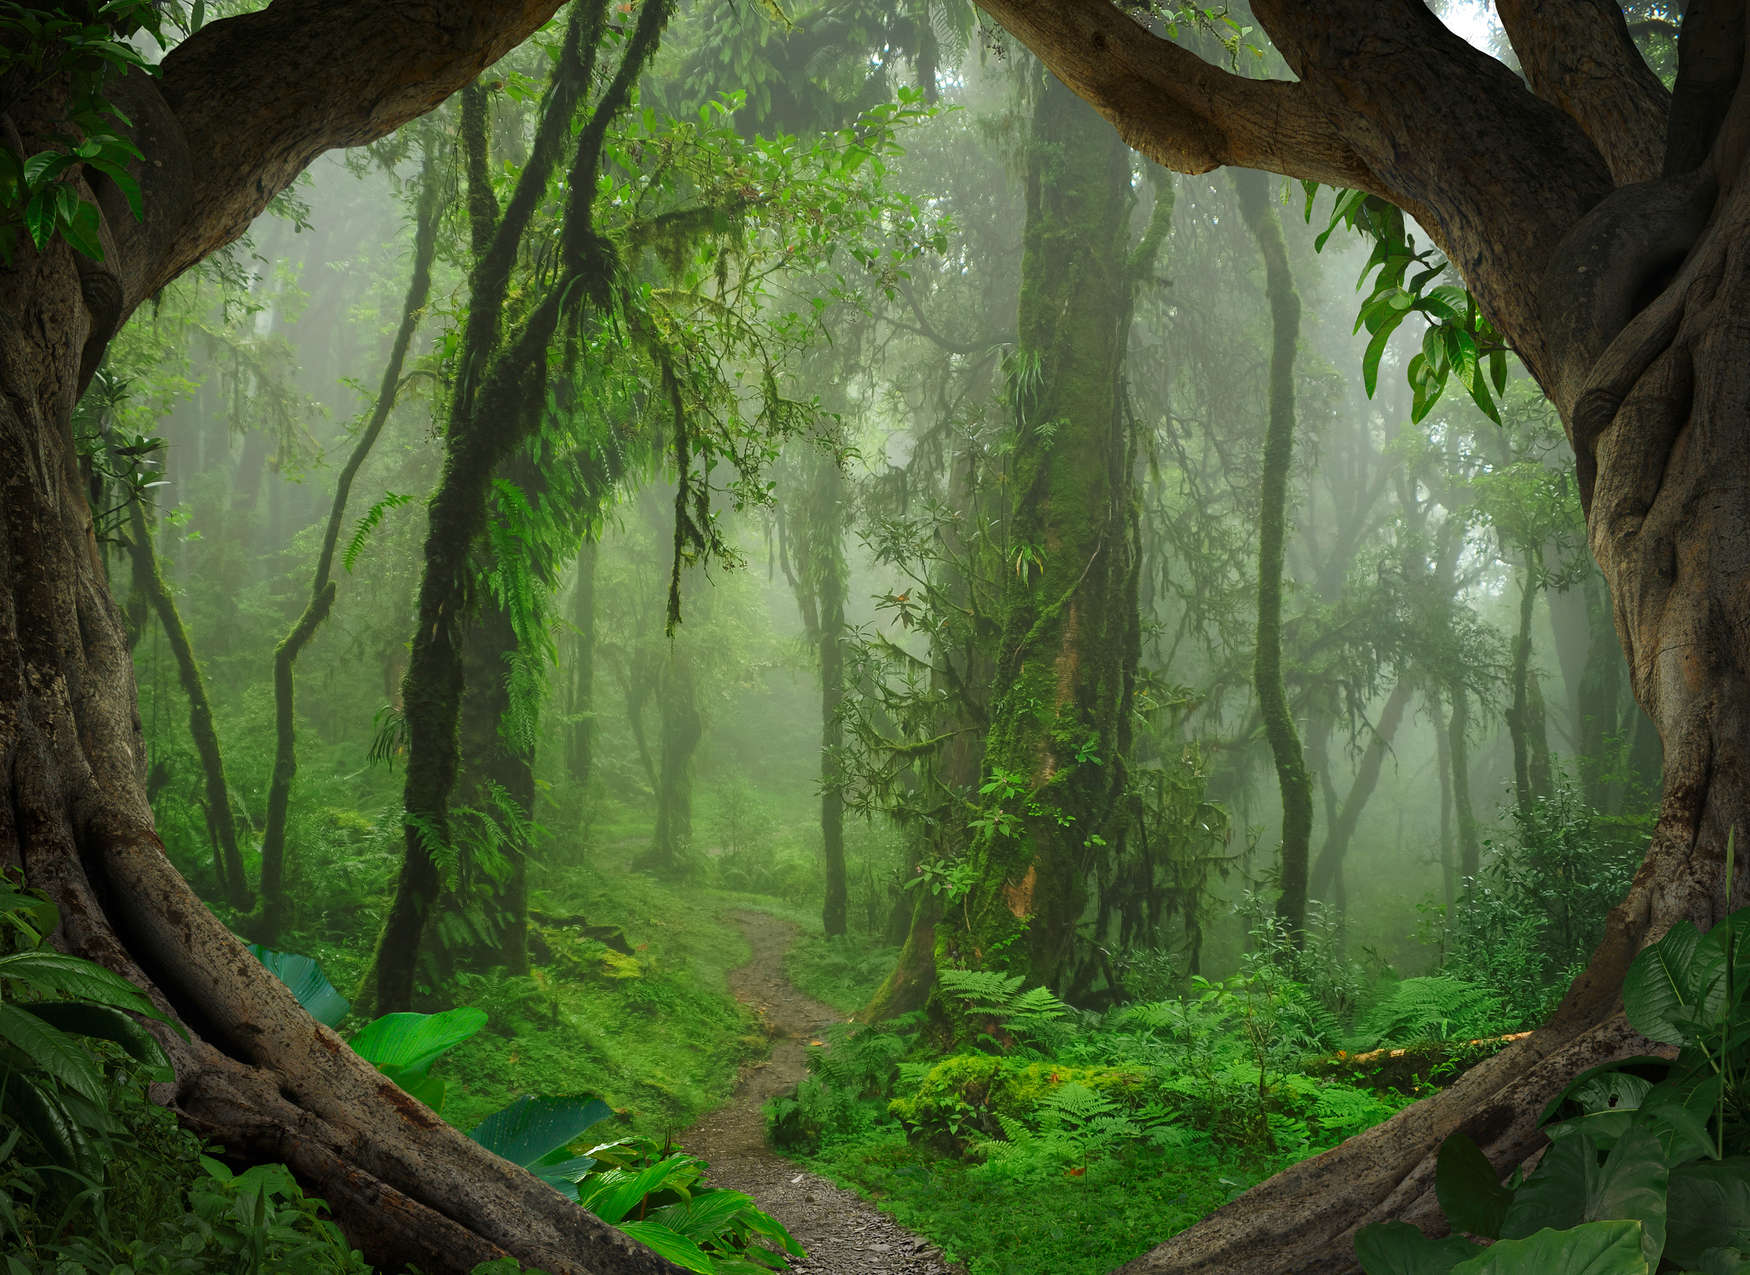             Carta da parati "Magical Tropical Forest" - Verde, marrone
        